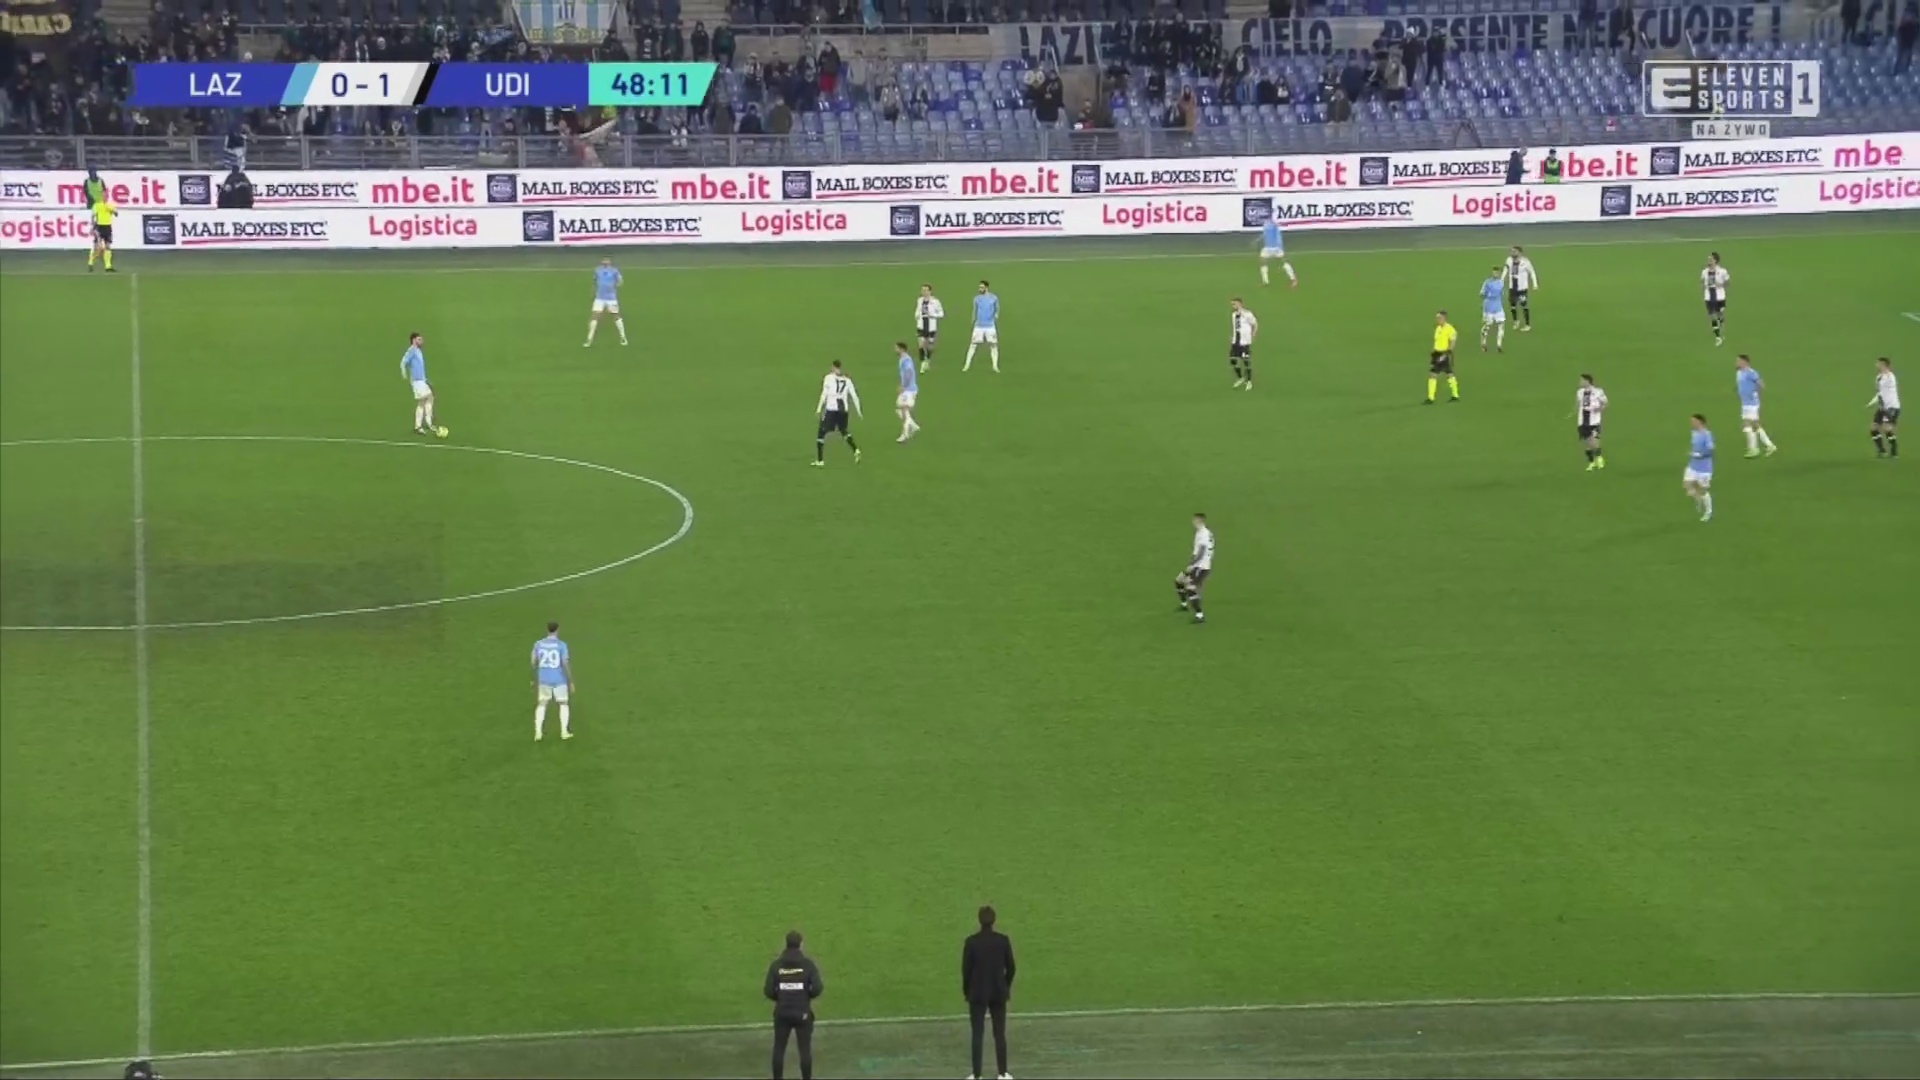 Lazio [1] - 1 Udinese - Mattia Zaccagni 49'